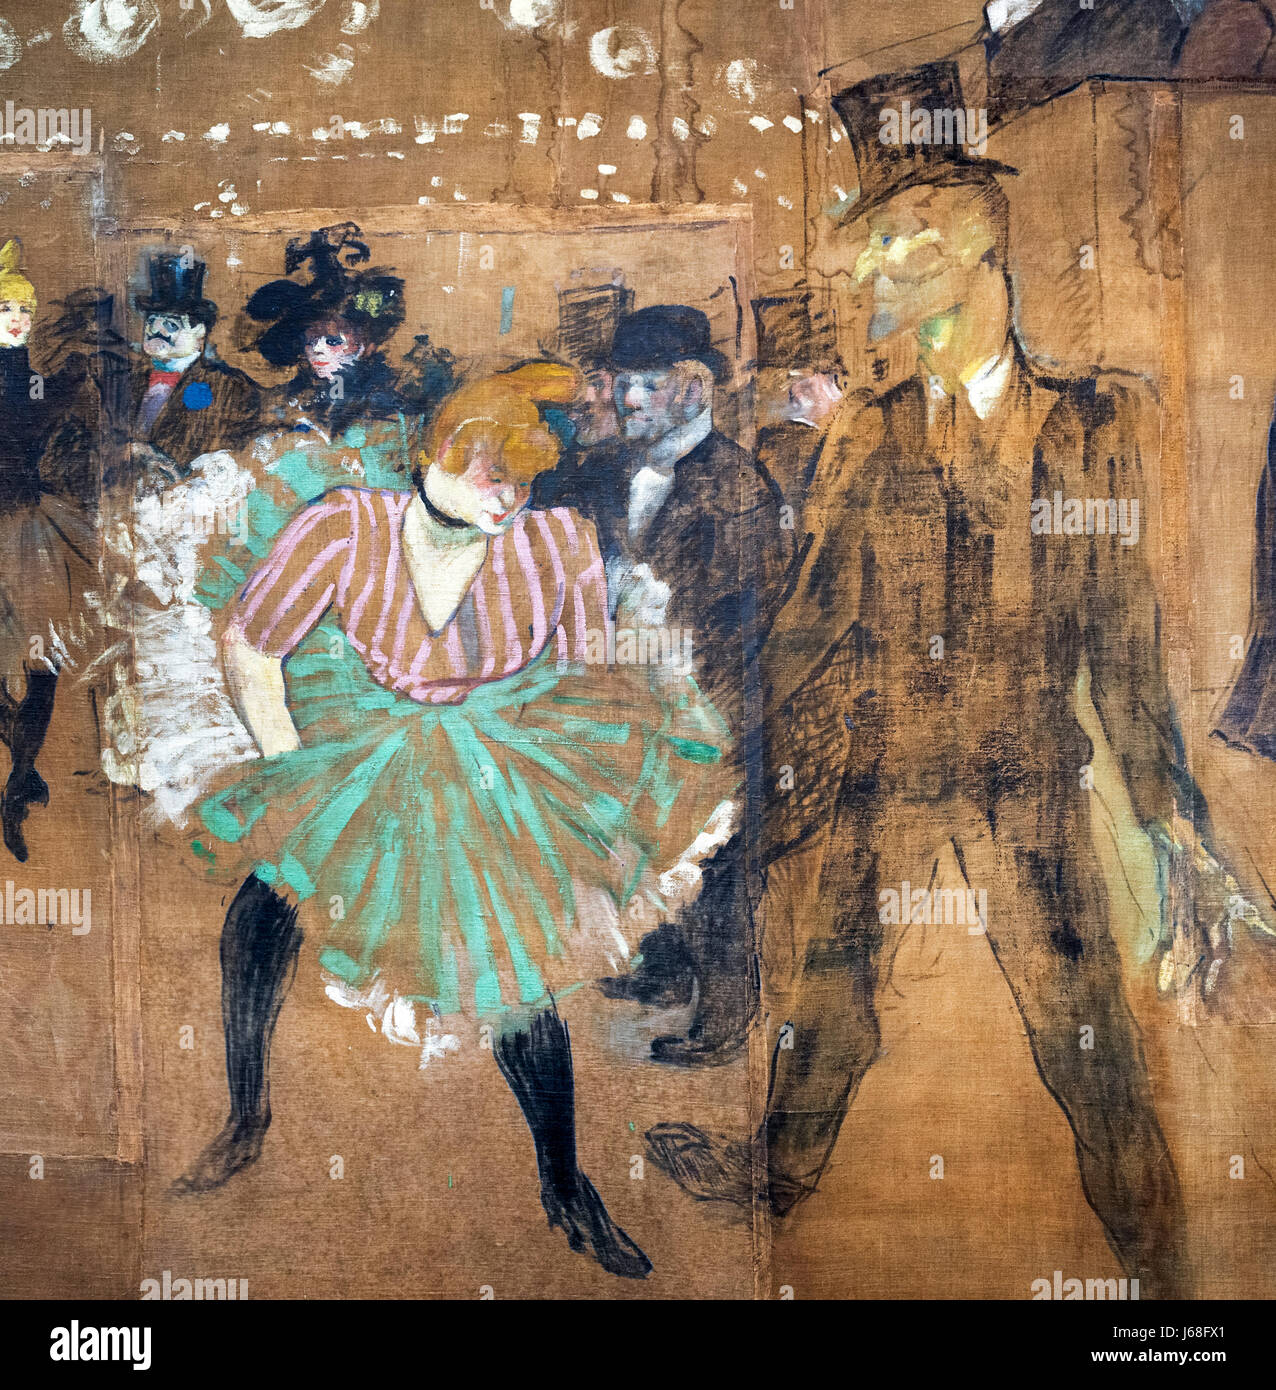 Toulouse-Lautrec Gemälde. "La Danse au Moulin Rouge" (Tanz im Moulin Rouge) von Henri de Toulouse-Lautrec (1864-1901), Öl auf Leinwand, 1895. Malerei ist auch bekannt als "La Goulue et Valentin le Désossé". Detail aus einem größeren Gemälde, J68FWY. Stockfoto